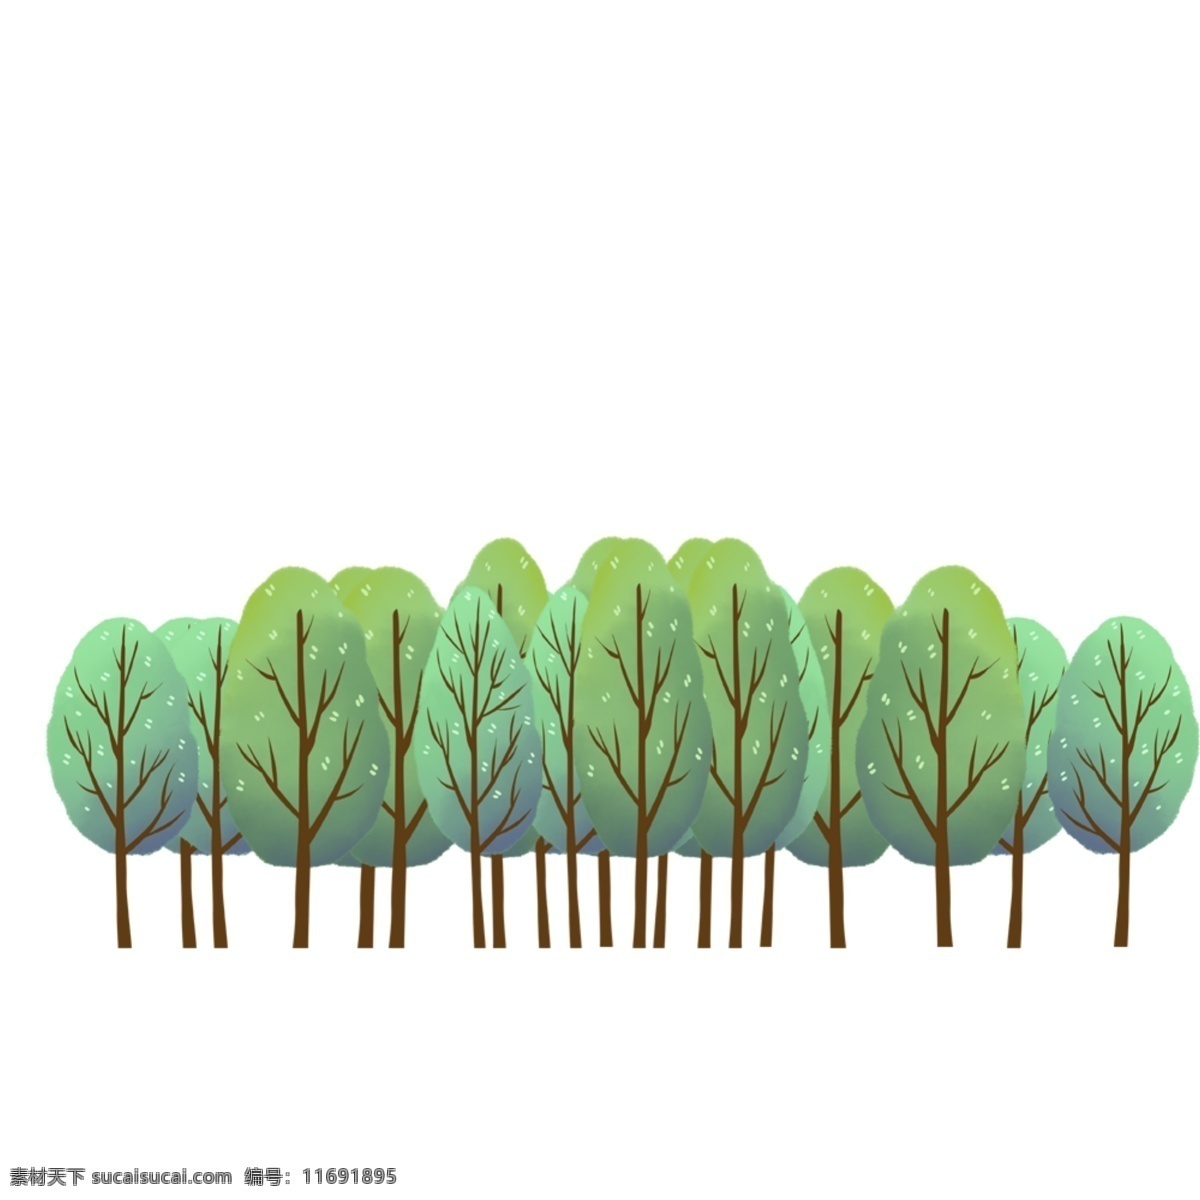 原创 手绘 排 小 树林 唯美 森林 环保 绿色 绿植 装饰图案